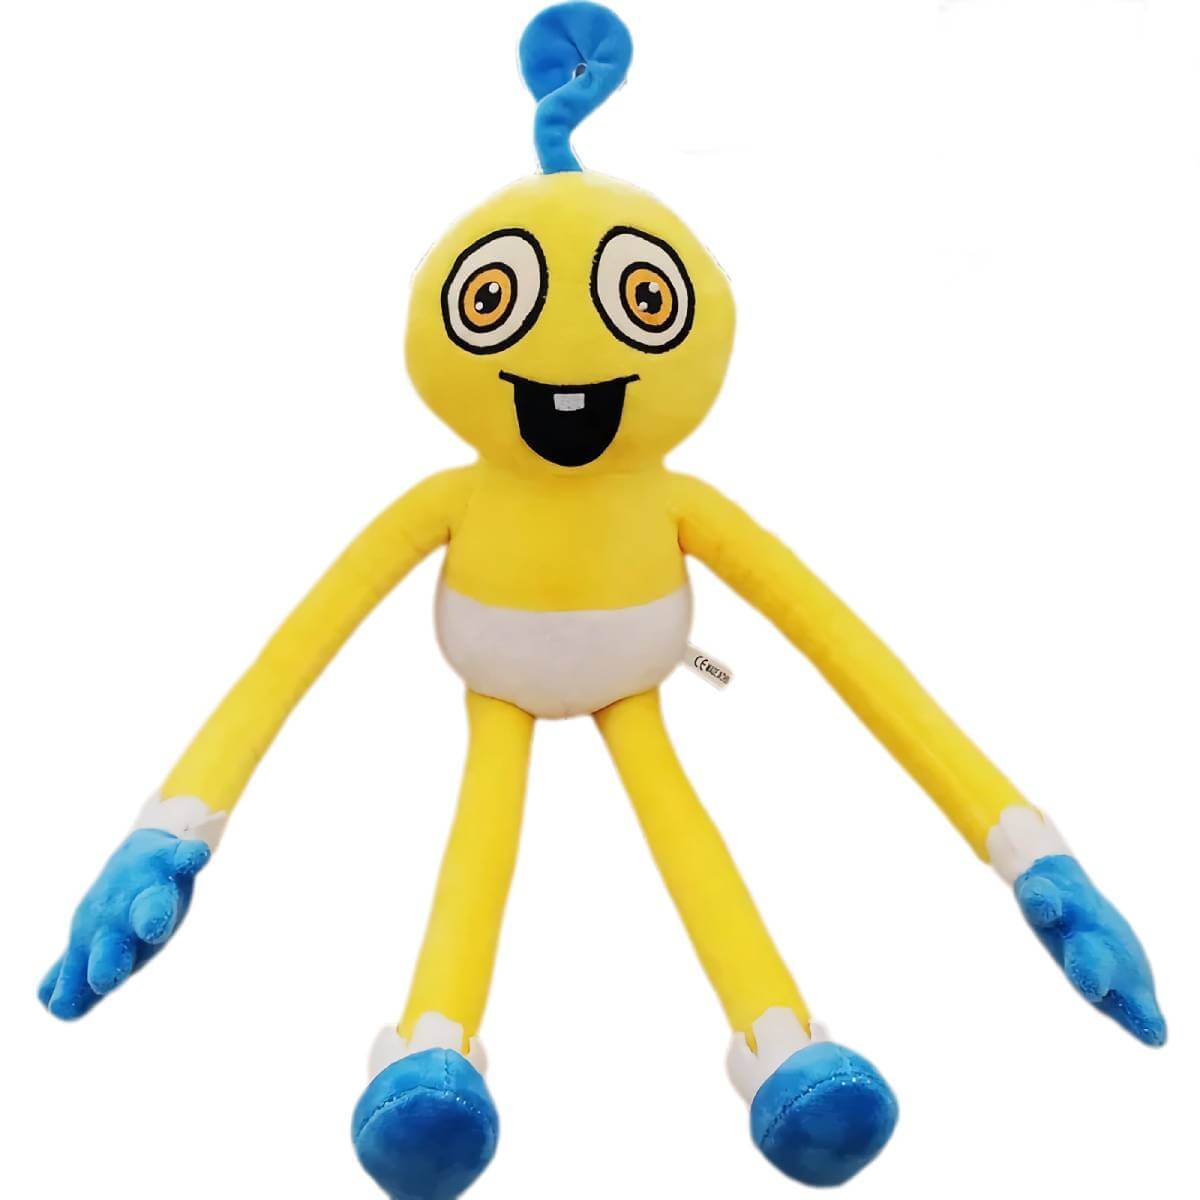 40 cm Poppy Playtime Poppy Son Plush Doll Toy - Five Star Toy